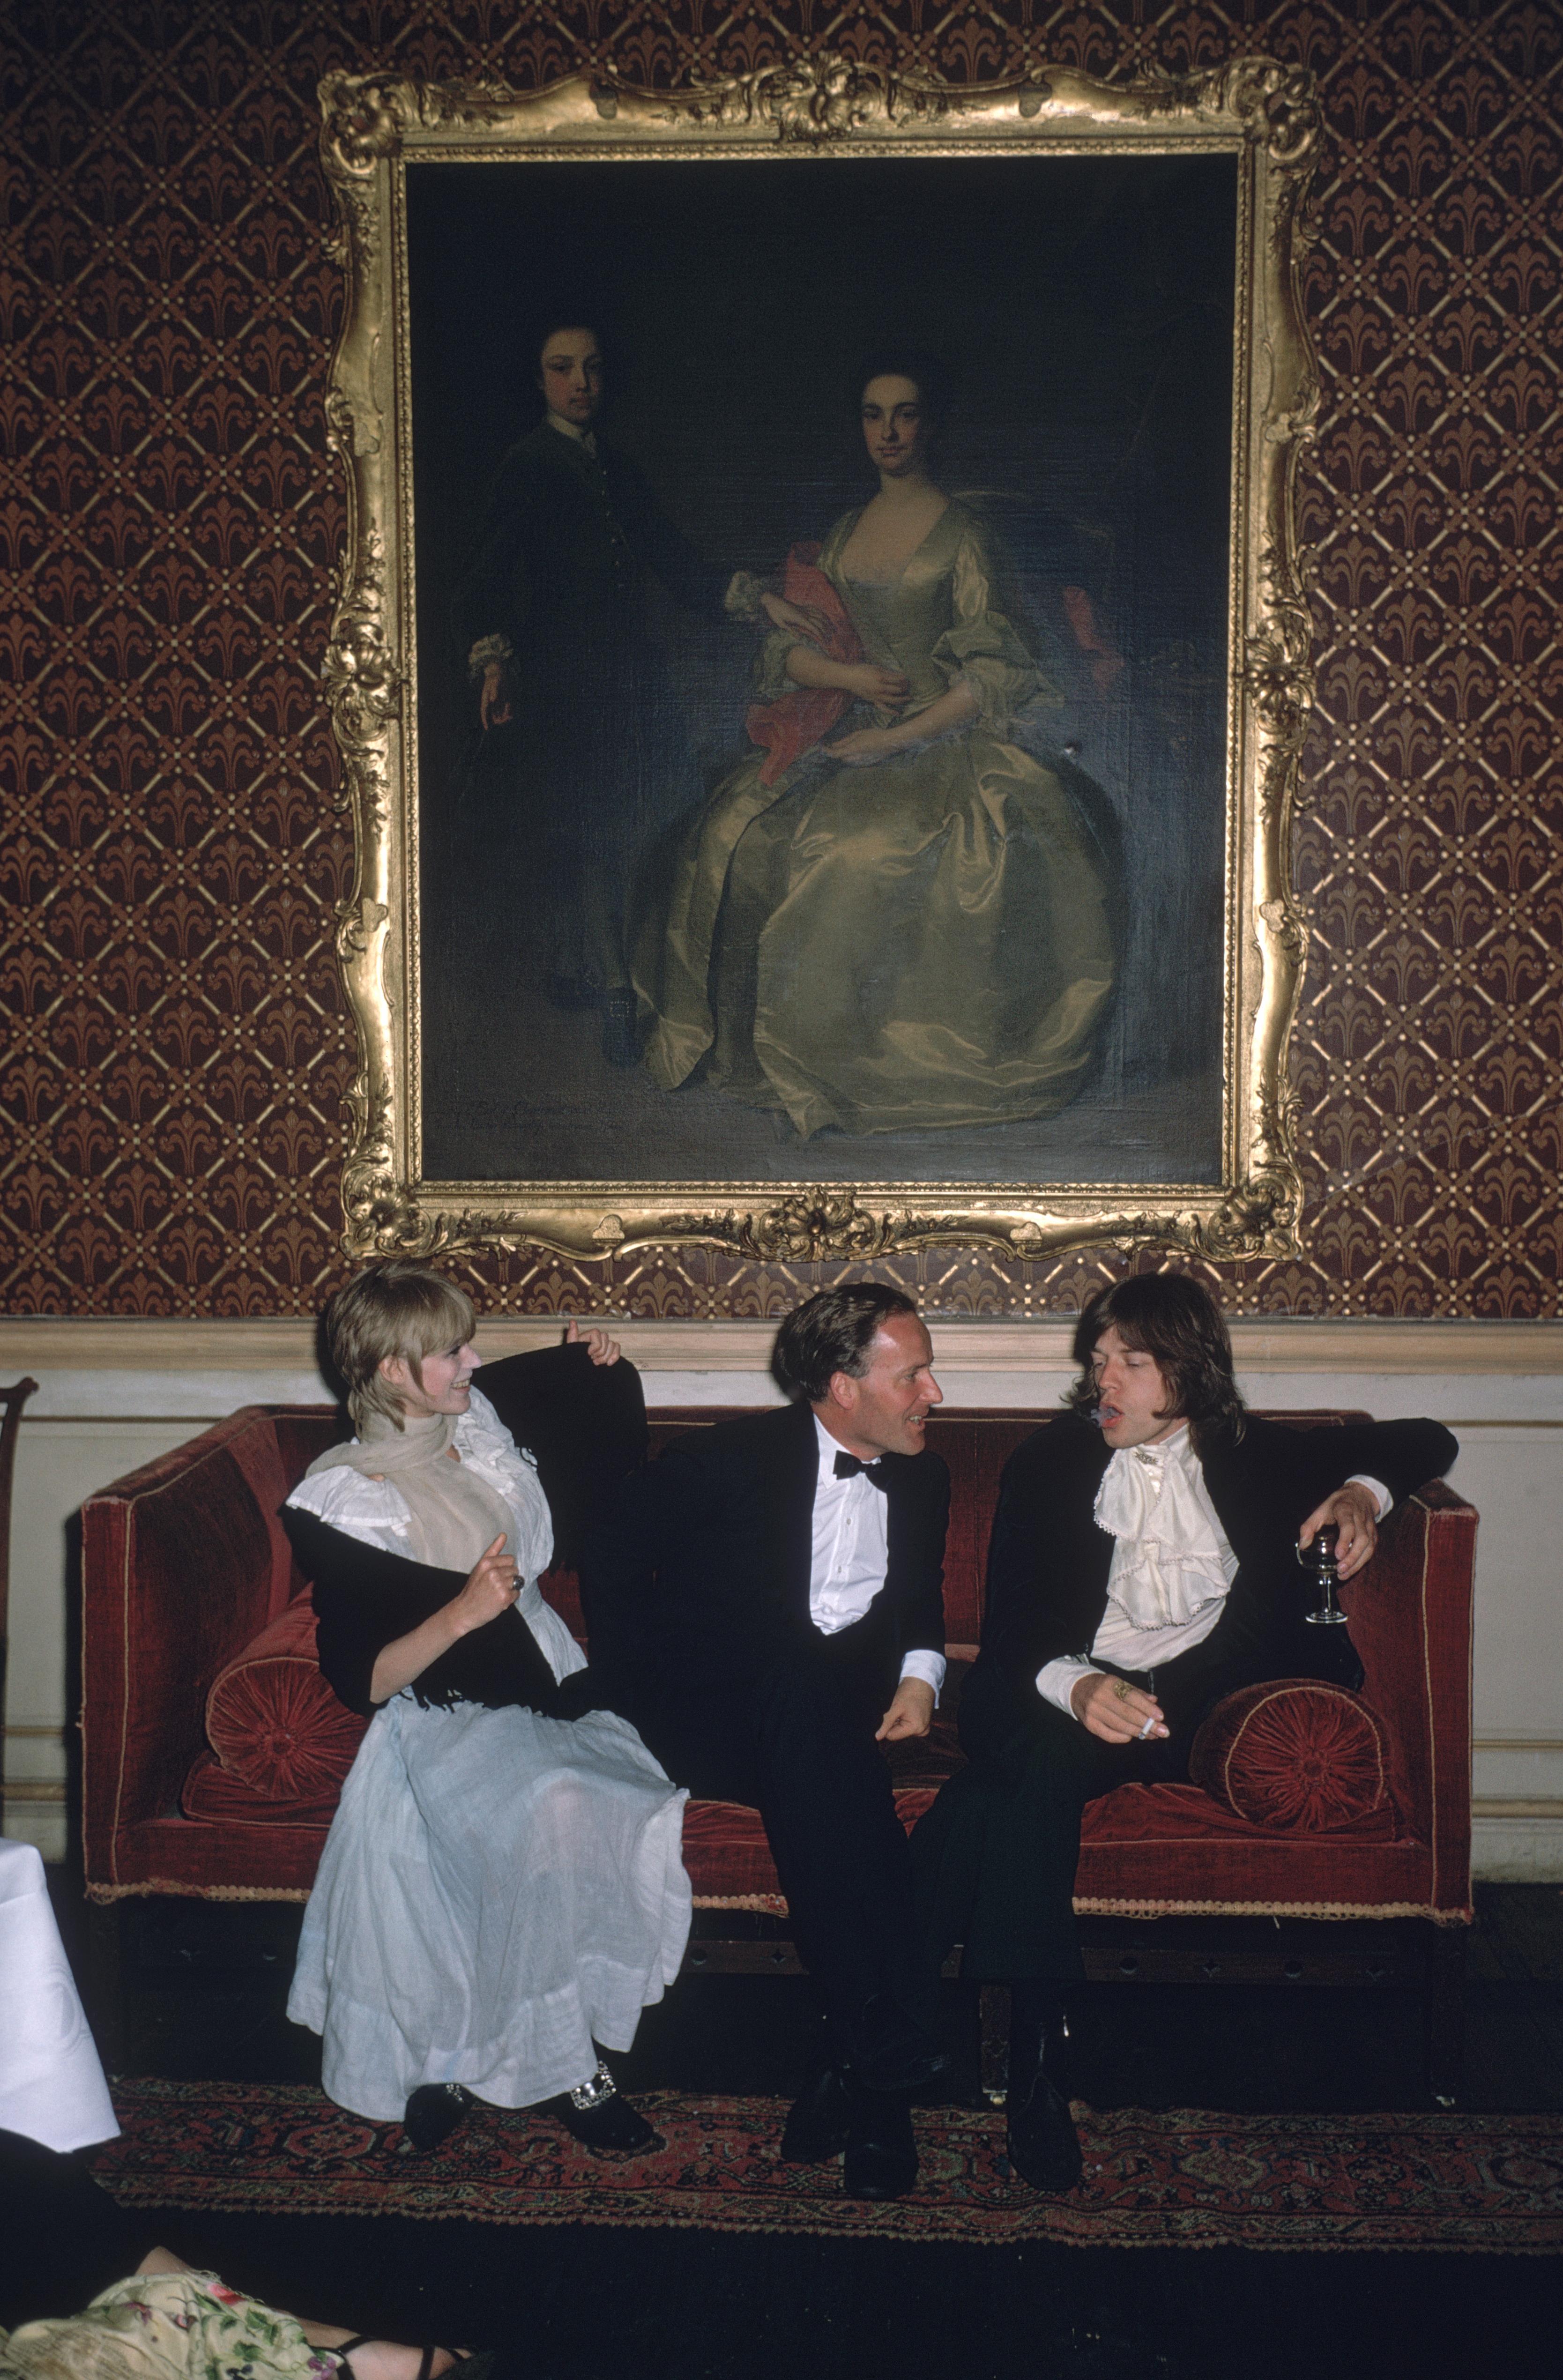 Pop und Gesellschaft" 1968 Slim Aarons Limited Estate Edition
1968: Von links nach rechts: Die Sängerin Marianne Faithfull, der ehrenwerte Desmond Guinness und Mick Jagger (von den Rolling Stones) sitzen auf einem Sofa unter einem großen